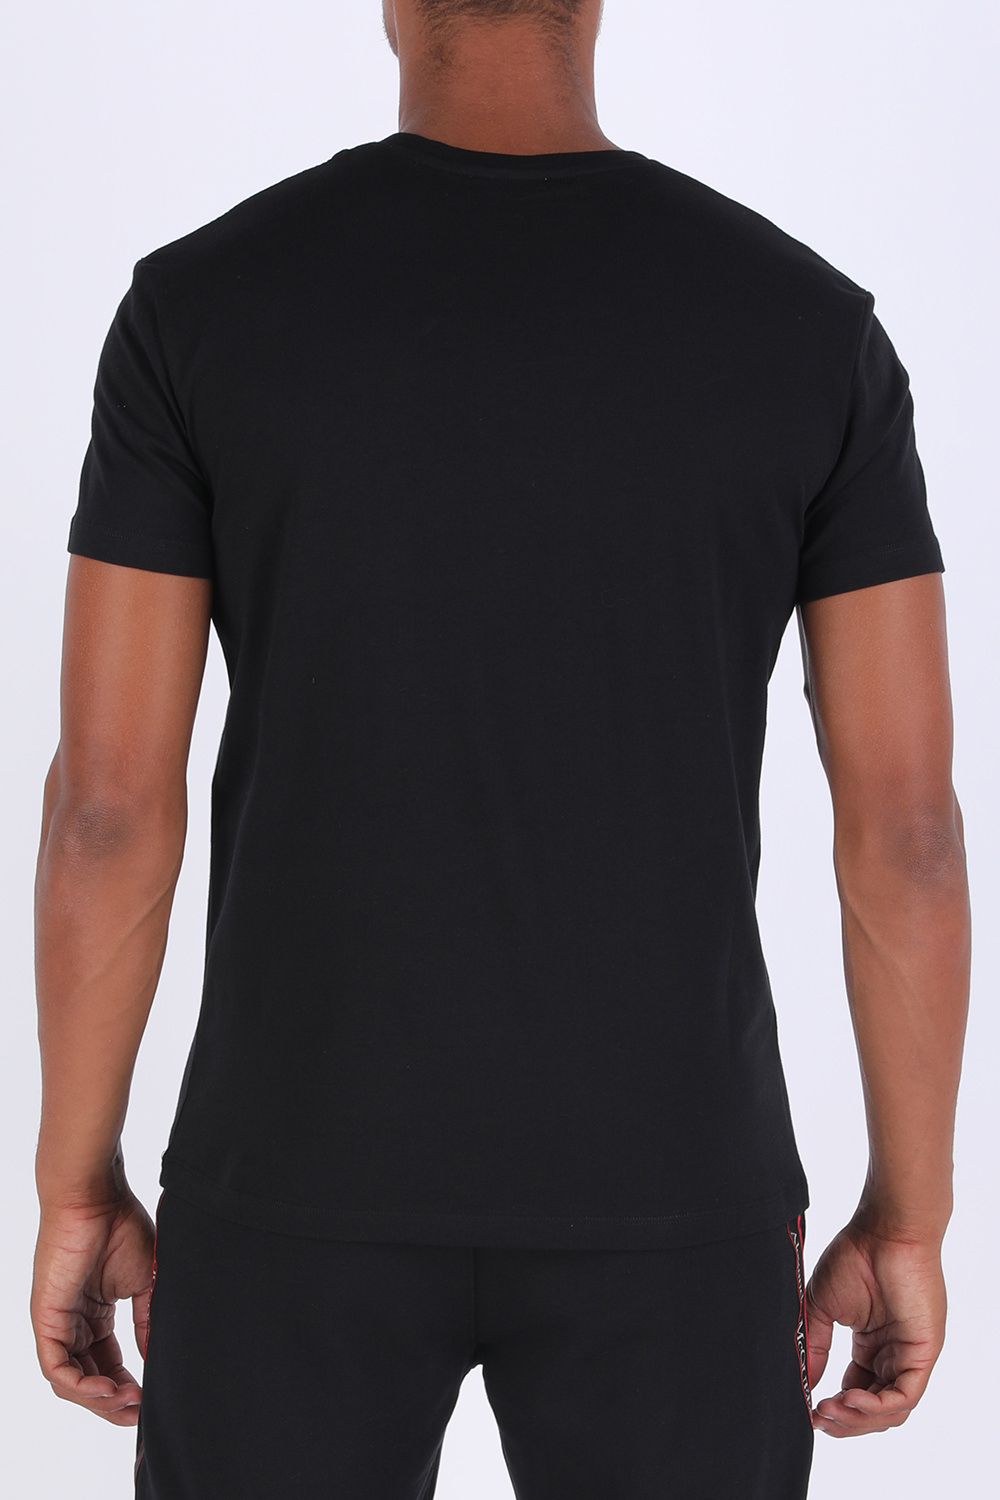 Organic Light Jersey Shirt in Black ALEXANDER MCQUEEN